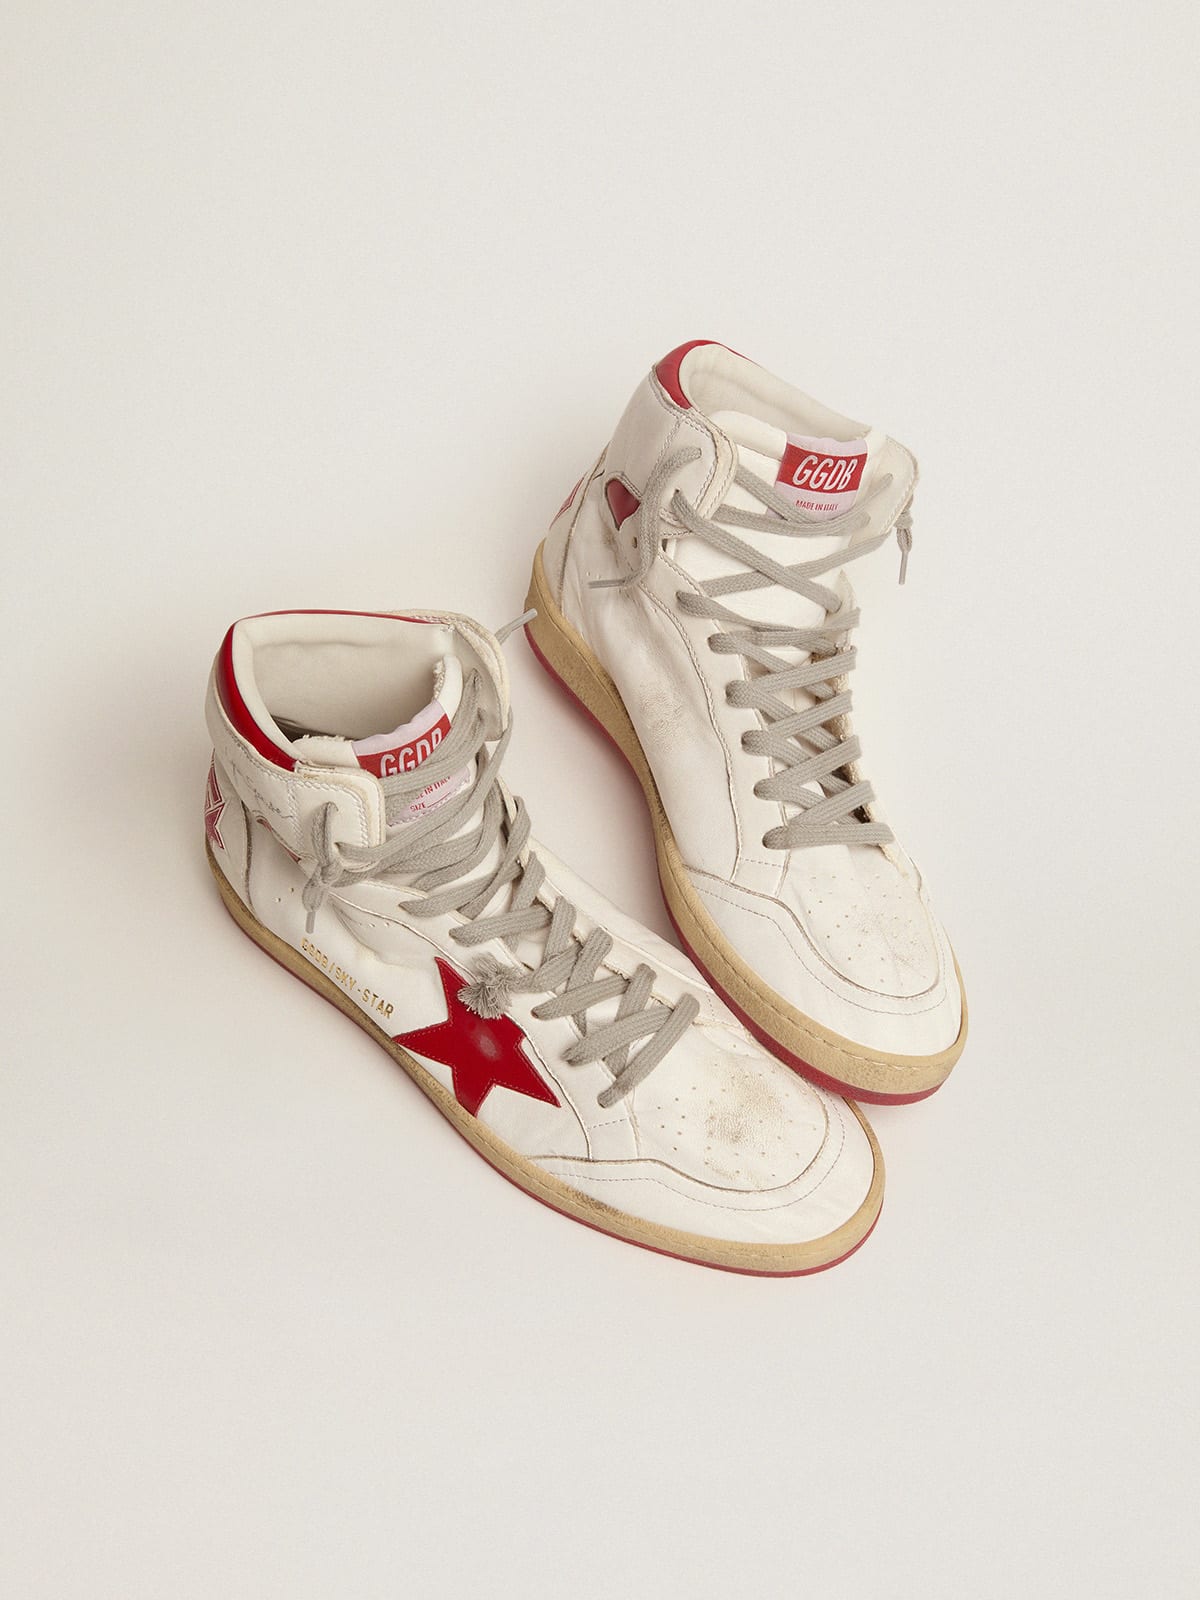 Golden Goose - Sneaker Sky-Star con firma sulla caviglia e inserti in pelle rossa in 